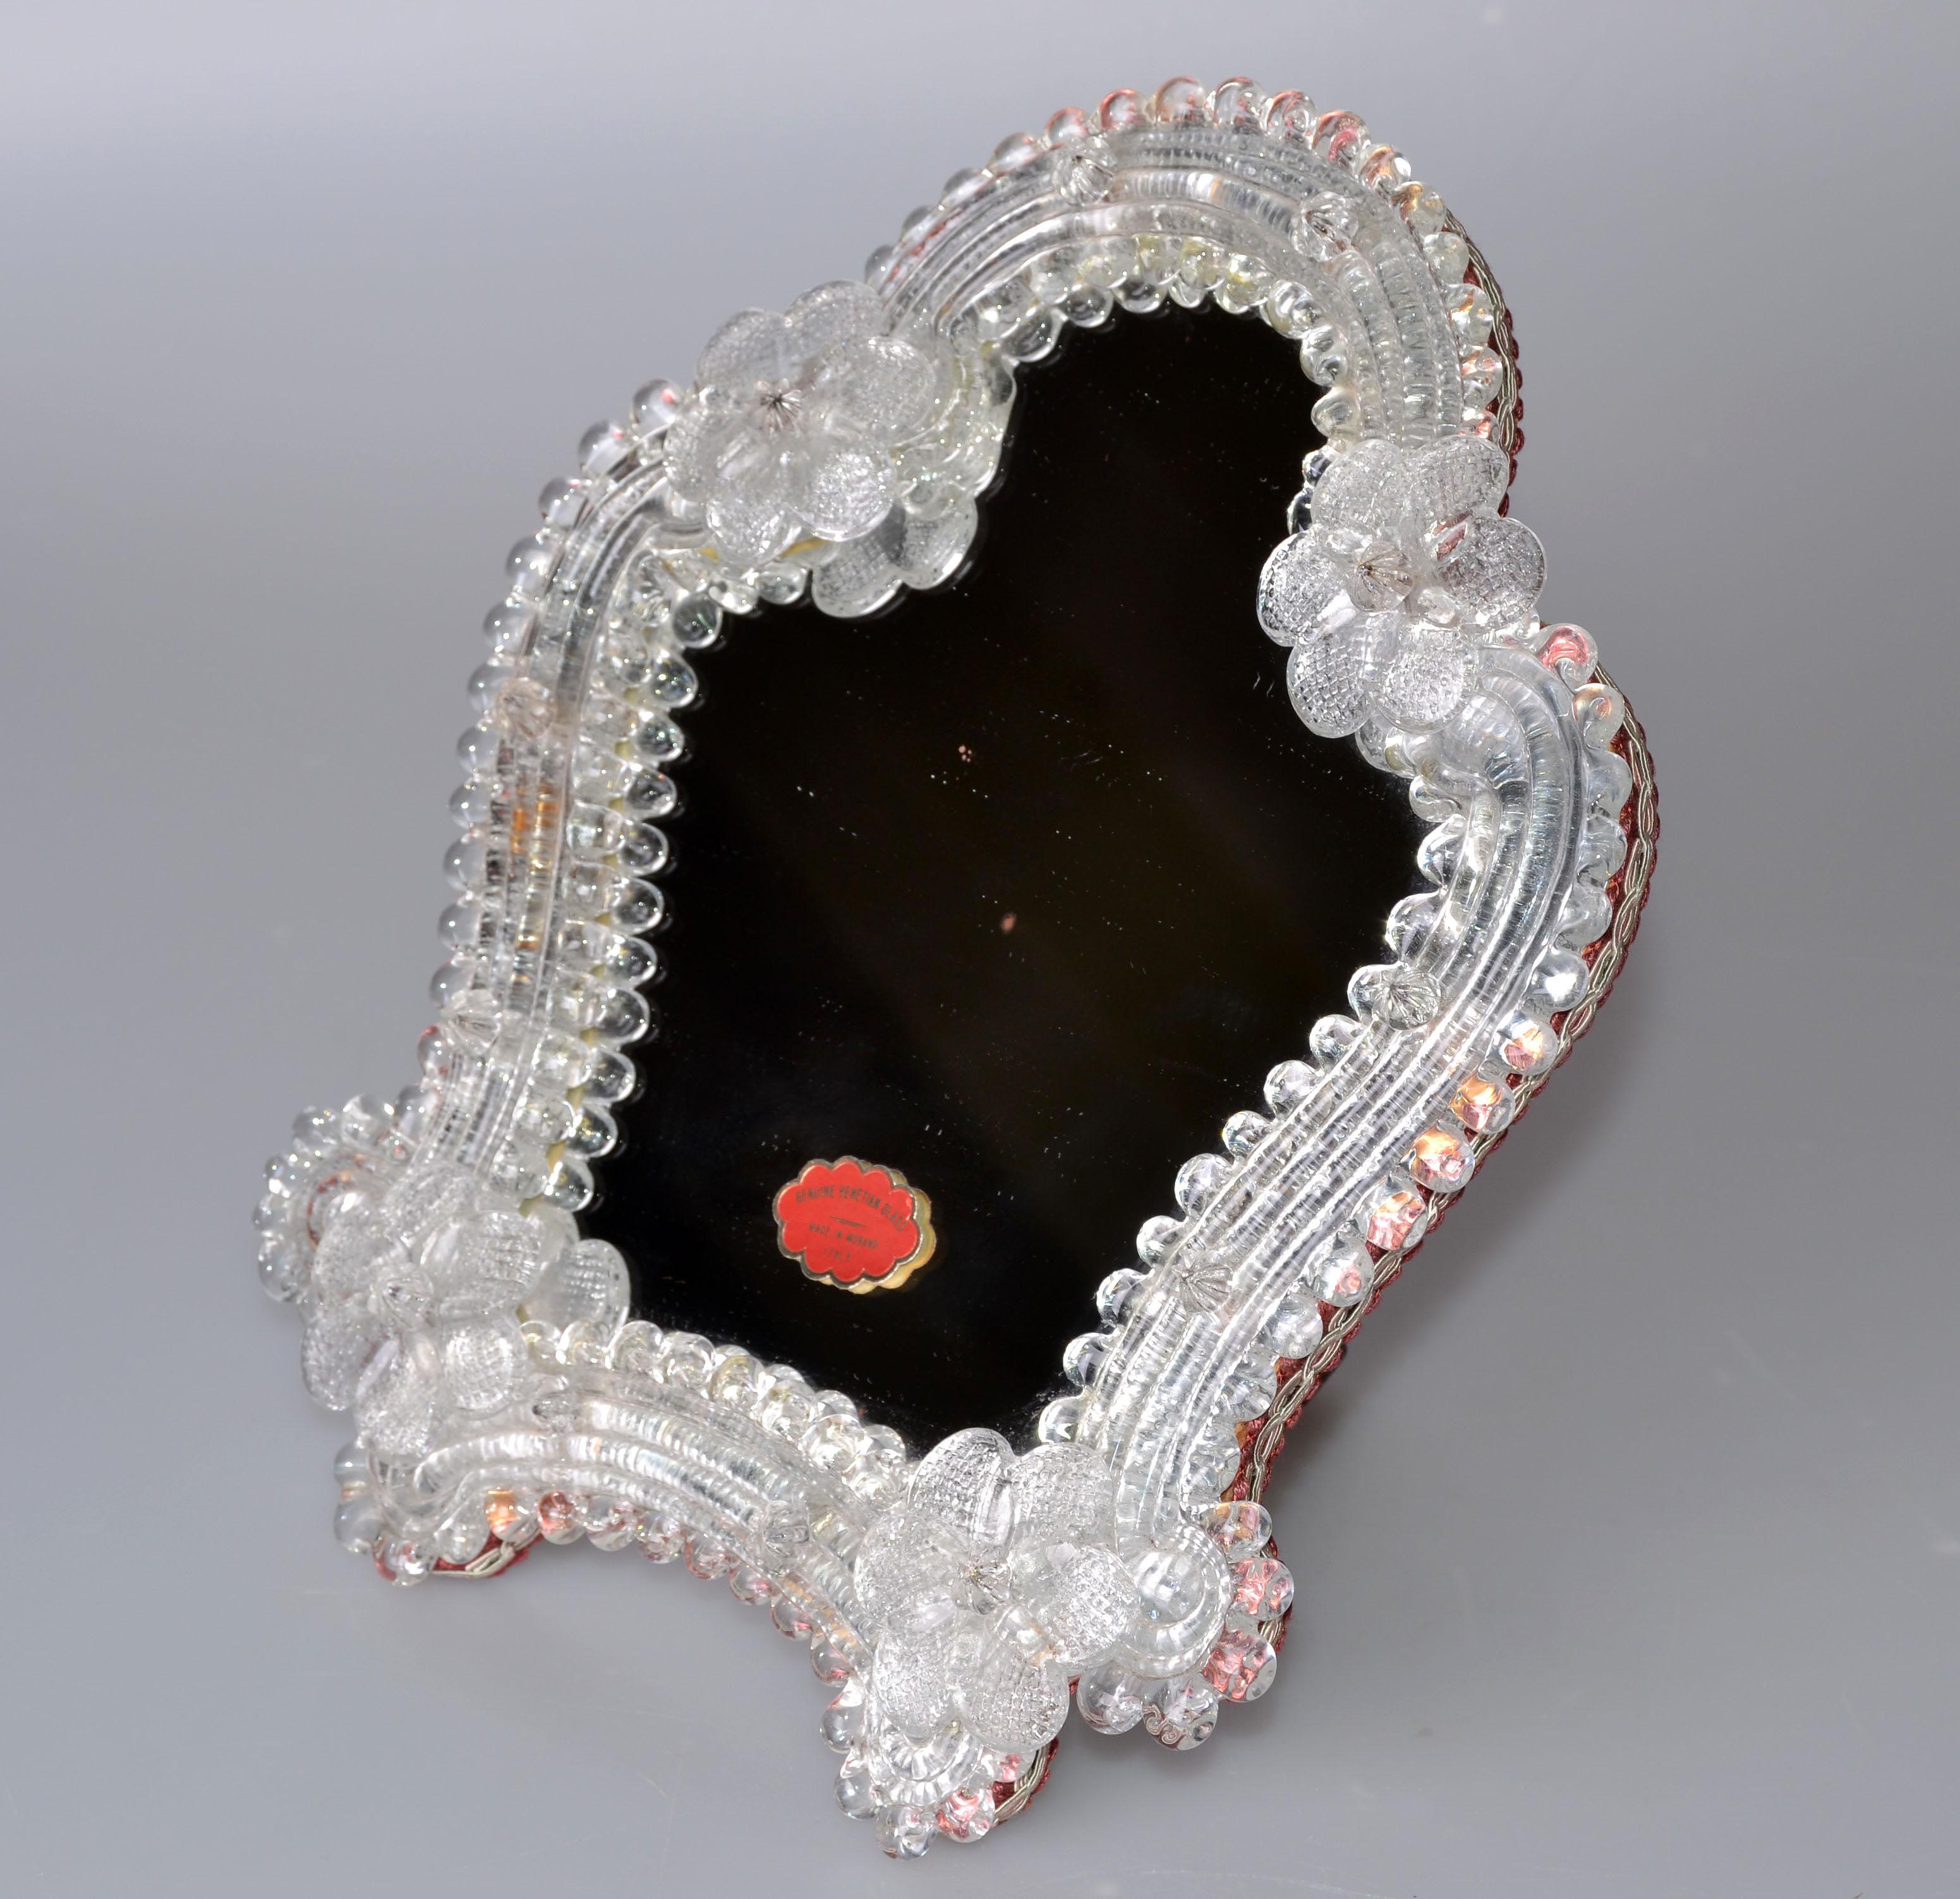 Joli miroir de courtoisie en verre de Murano provenant d'Italie. 
Décoré de fleurs de Bohème faites à la main et soutenu par un dos en bois.
Label original sur le miroir. 
Taille du miroir : 6 pouces x 7 pouces.